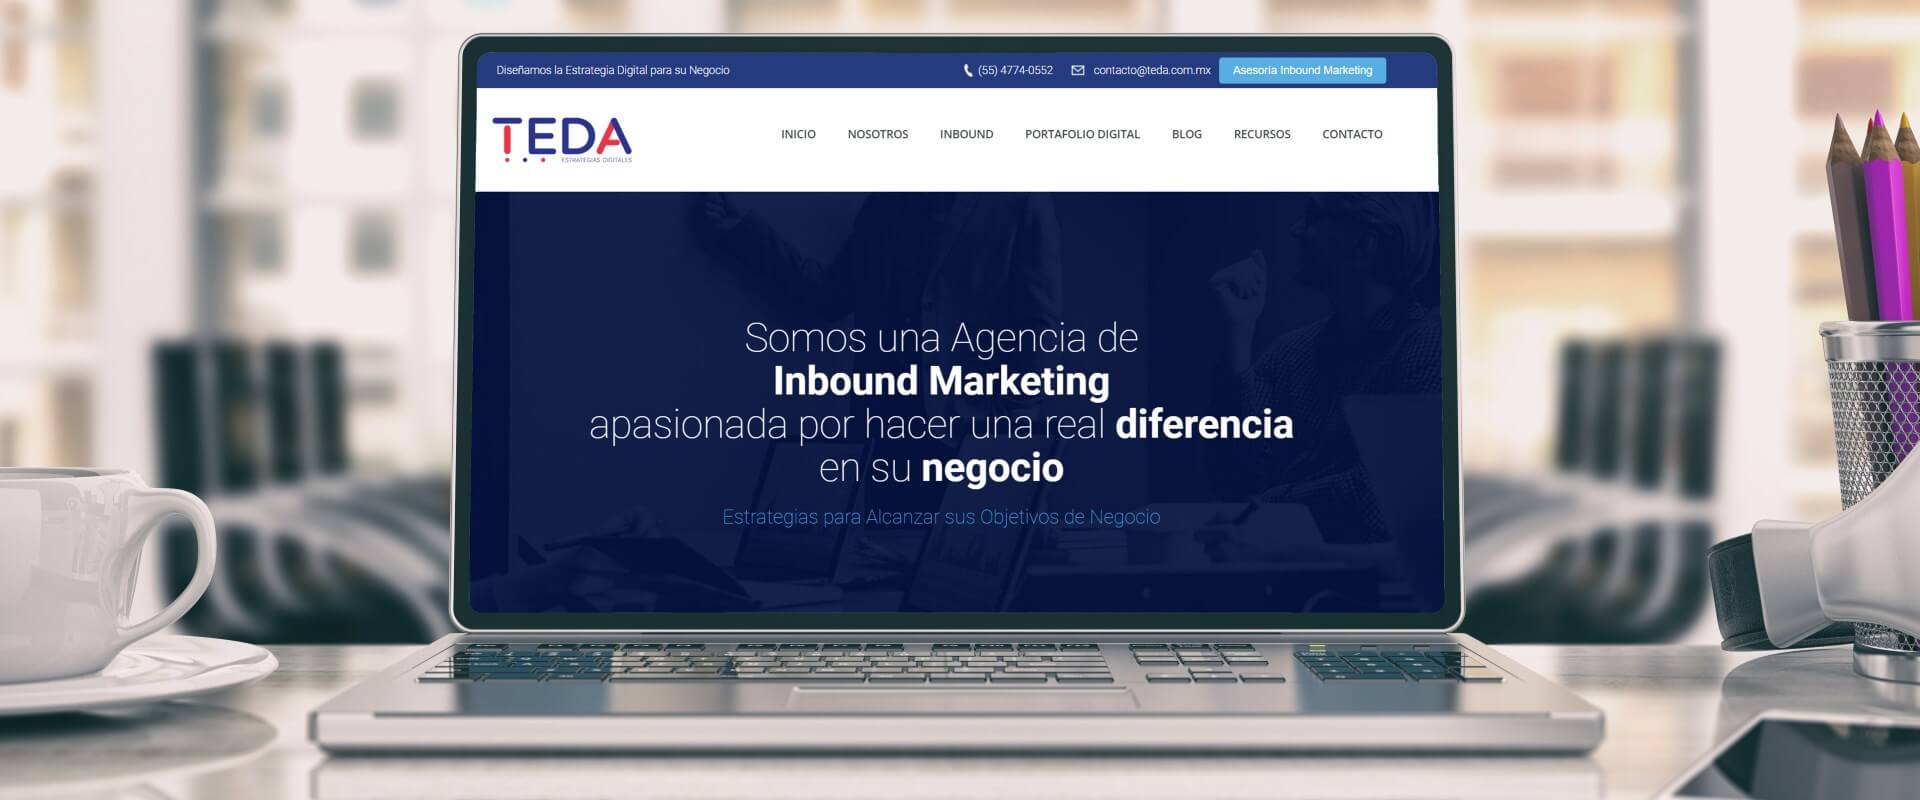 TEDA - Agencia Inbound y Marketing Digital de 360°